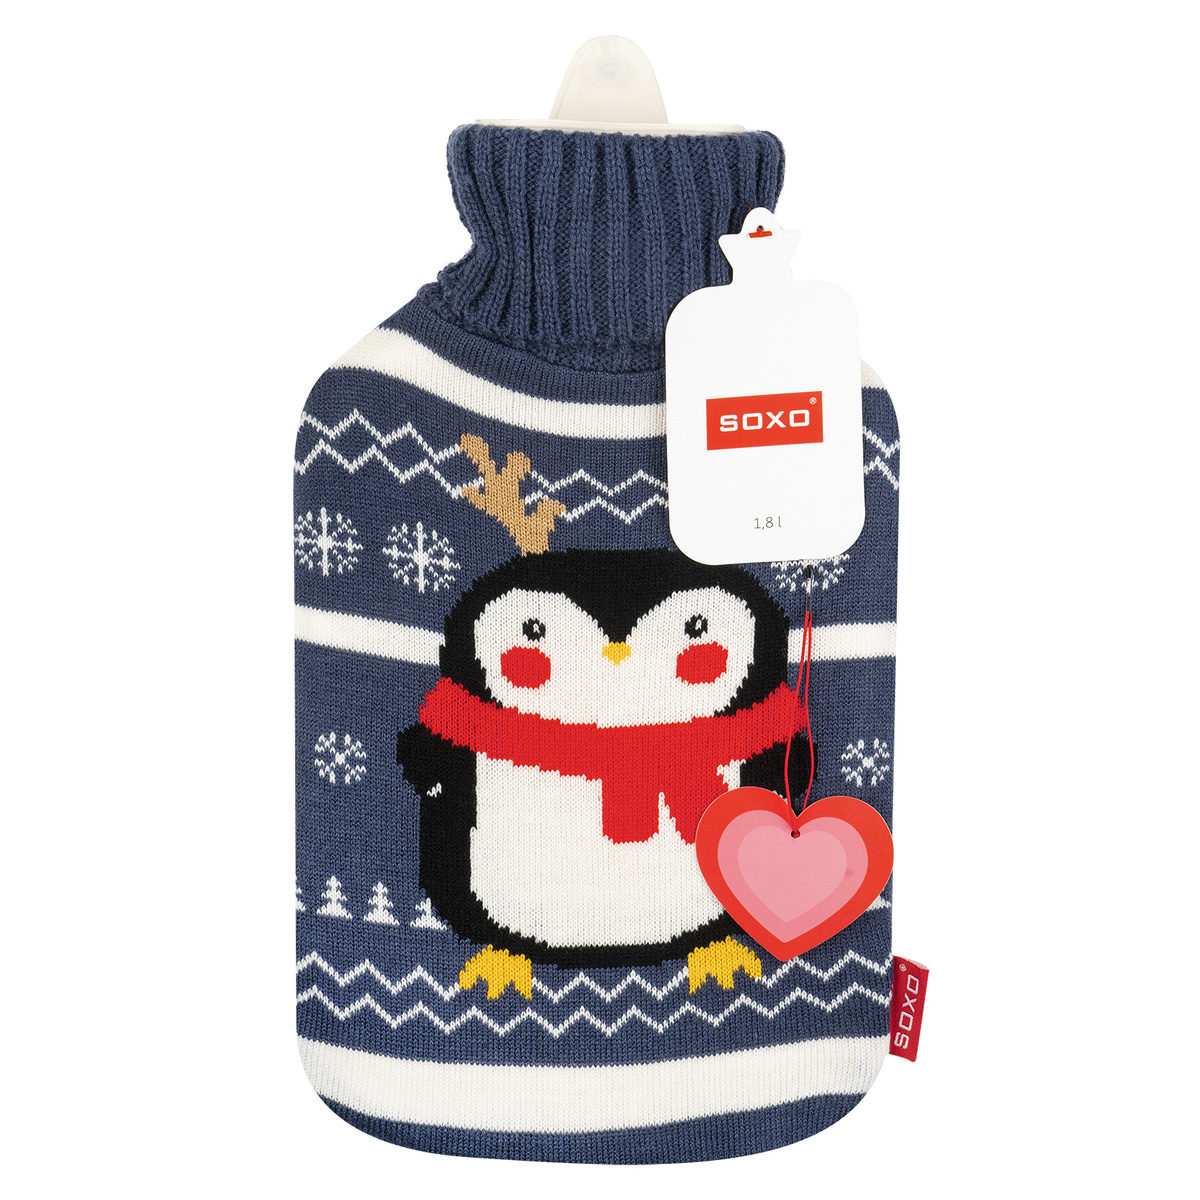 Pinguin Wärmflasche im Pullover lustiges Geschenk für Nikolaustag, Weihnachten - 19,99 €